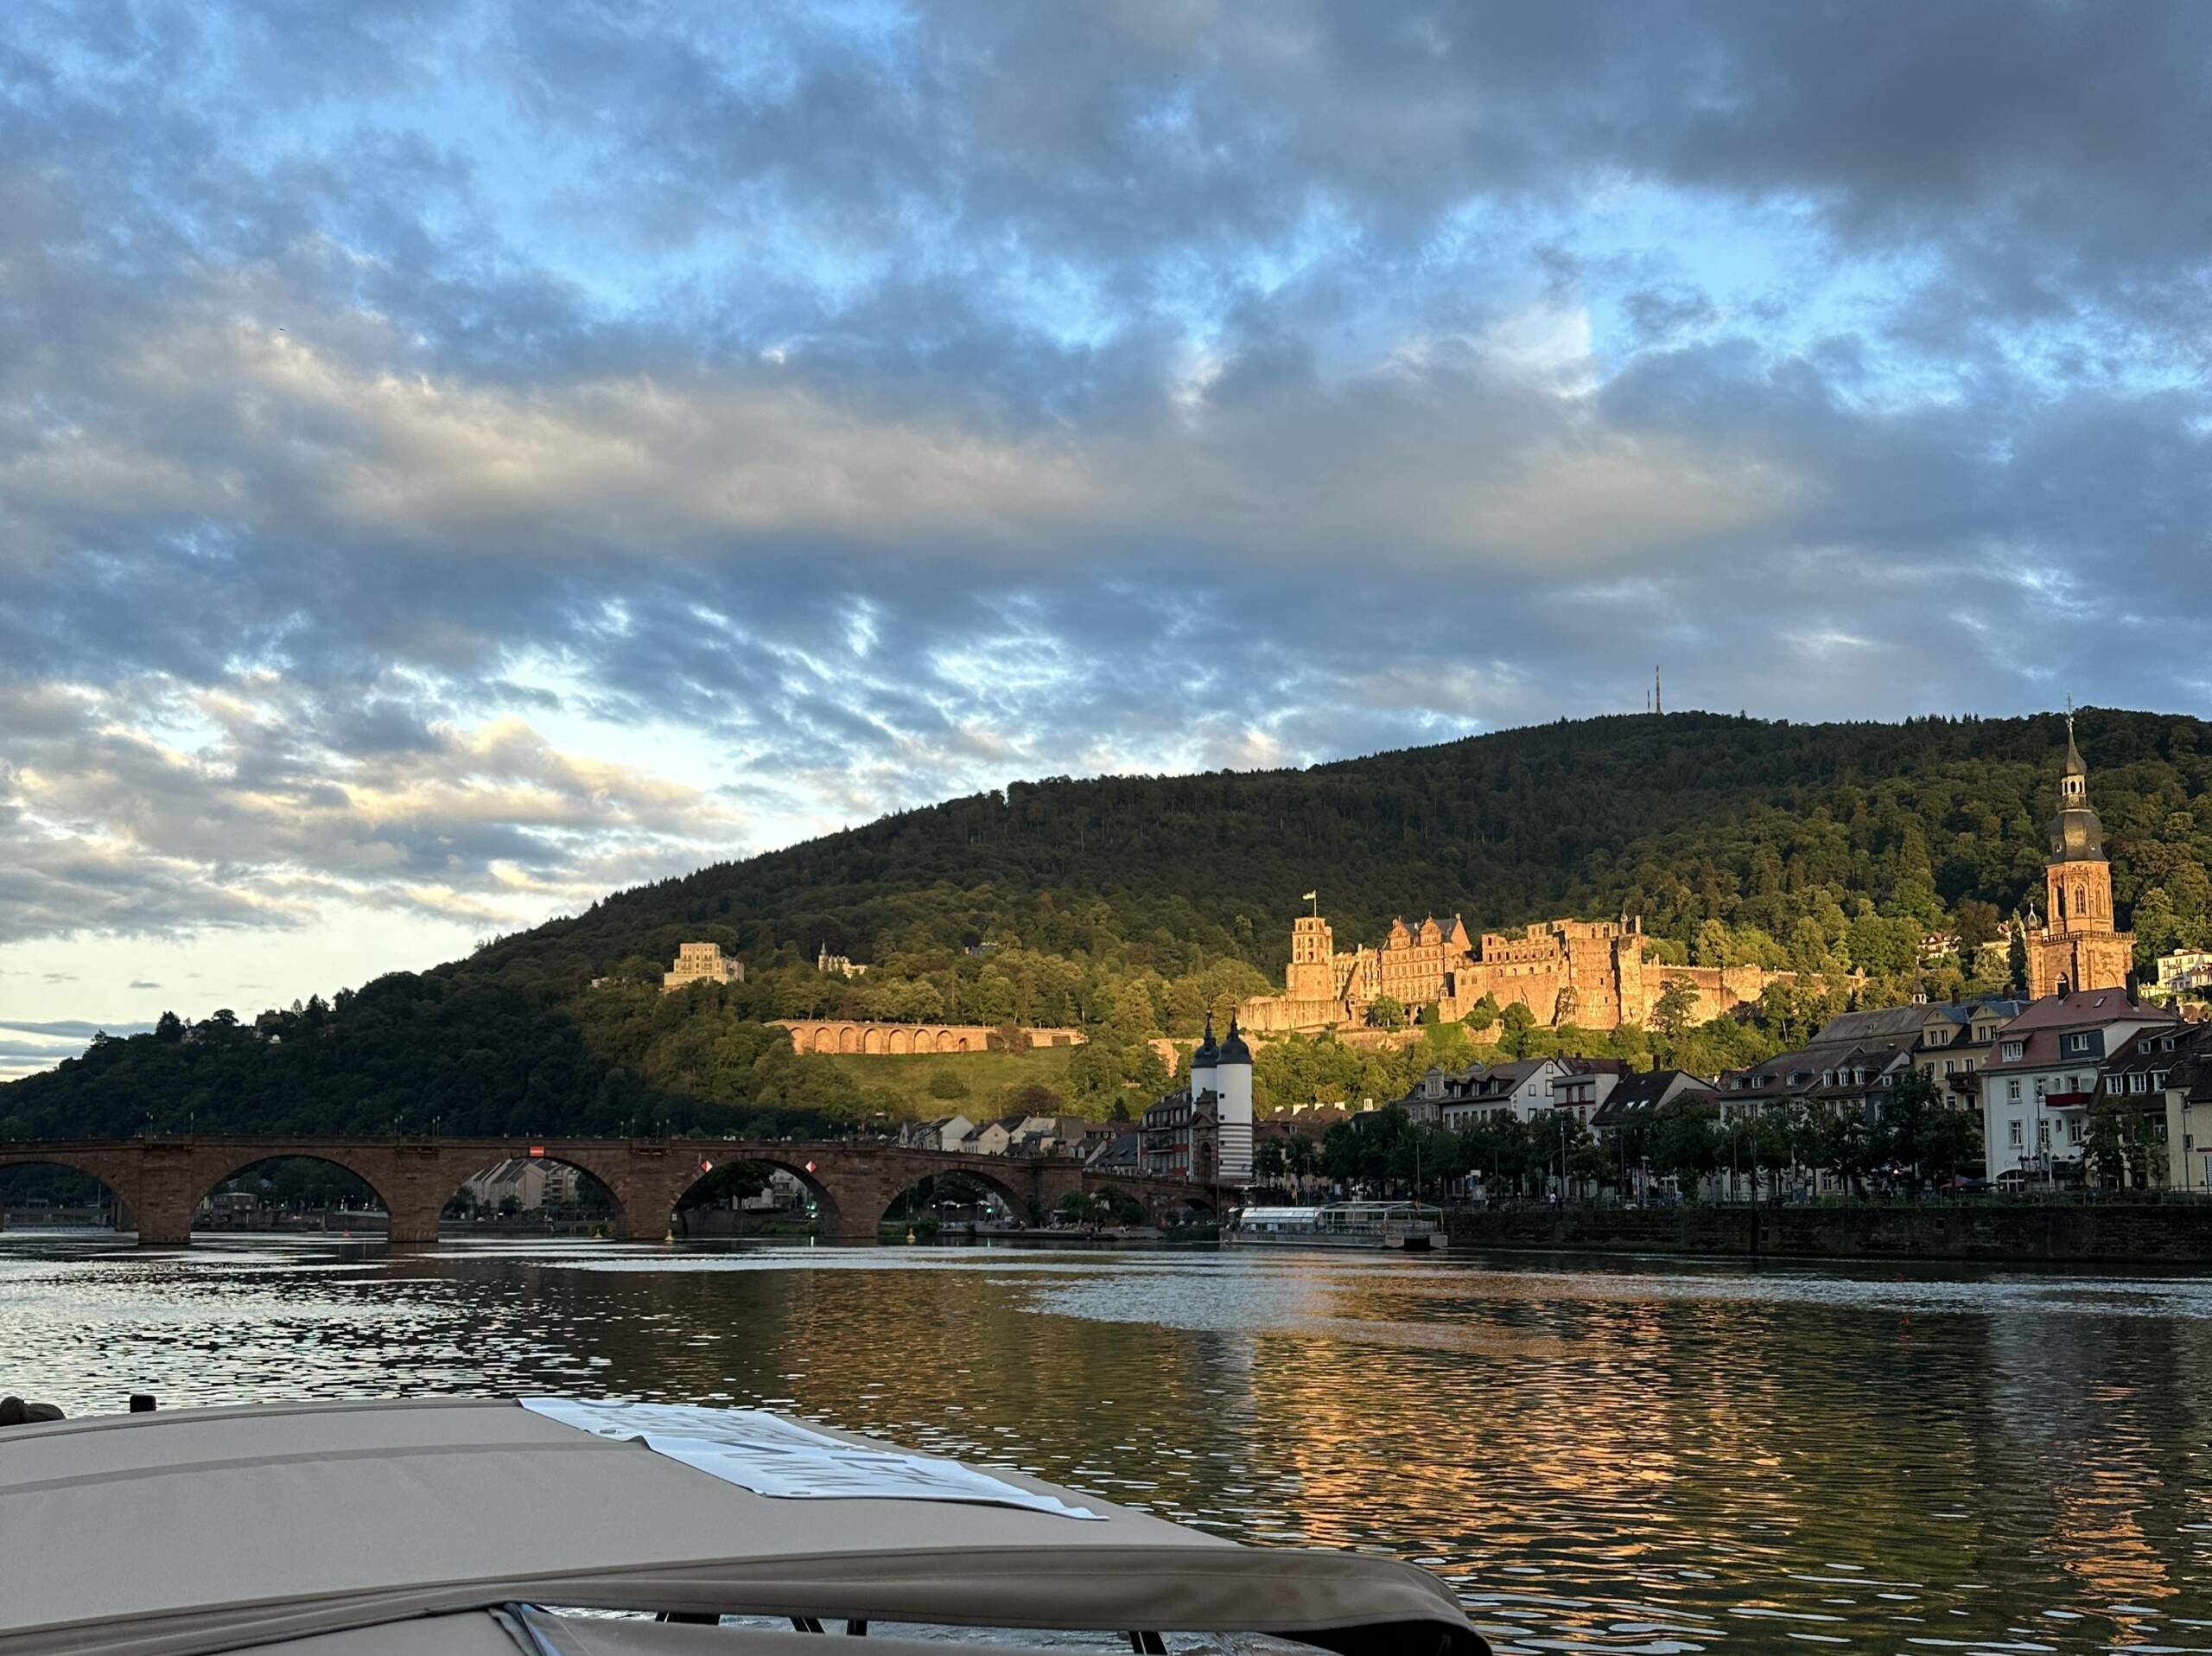 Das Panorama von Heidelberg mit dem Heidelberger Schloss und der Alten Brücke vom Boot von Riverboat aus gesehen